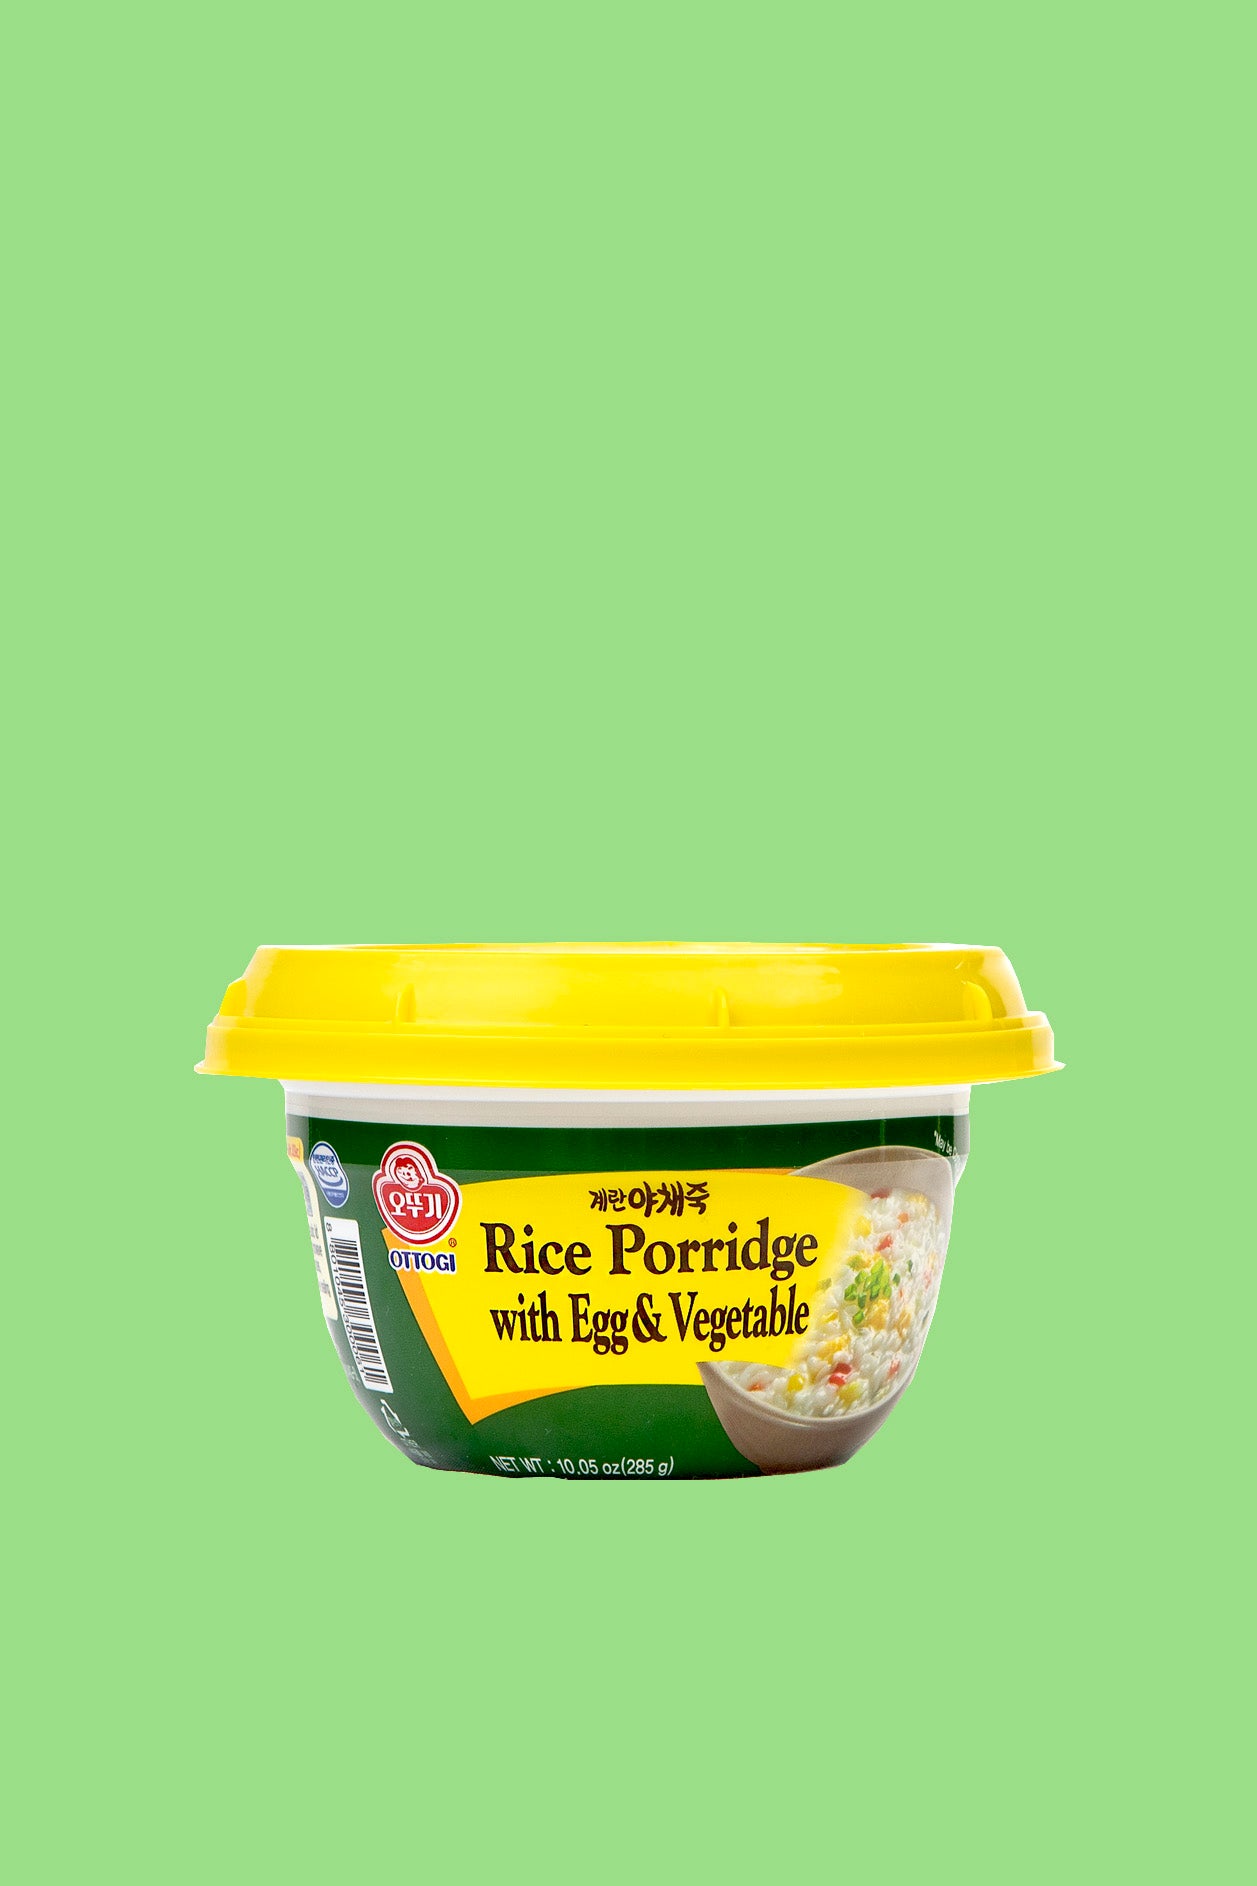 Egg & Vegetable Rice Porridge 285g